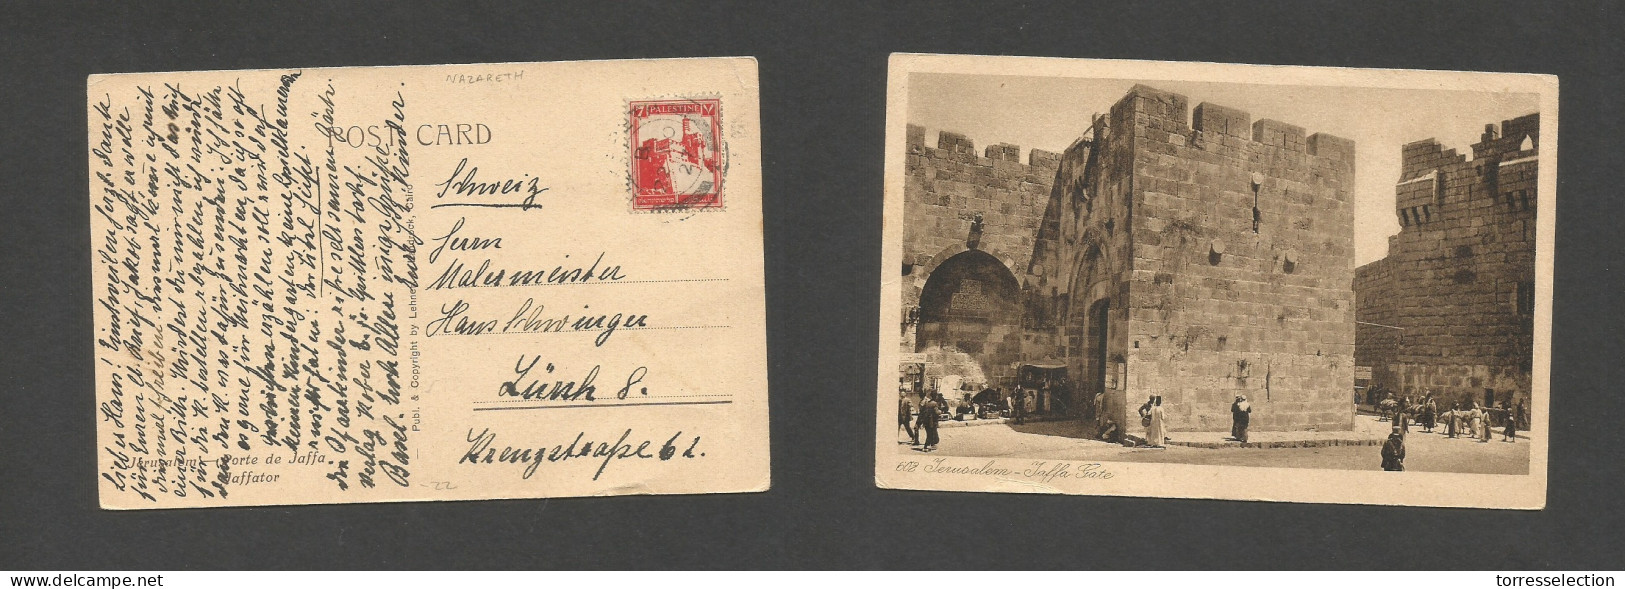 PALESTINE. 1927 (22 Nov) Nazareth - Switzerland, Zurich. Fkd Ppc. Fine. SALE. - Palästina